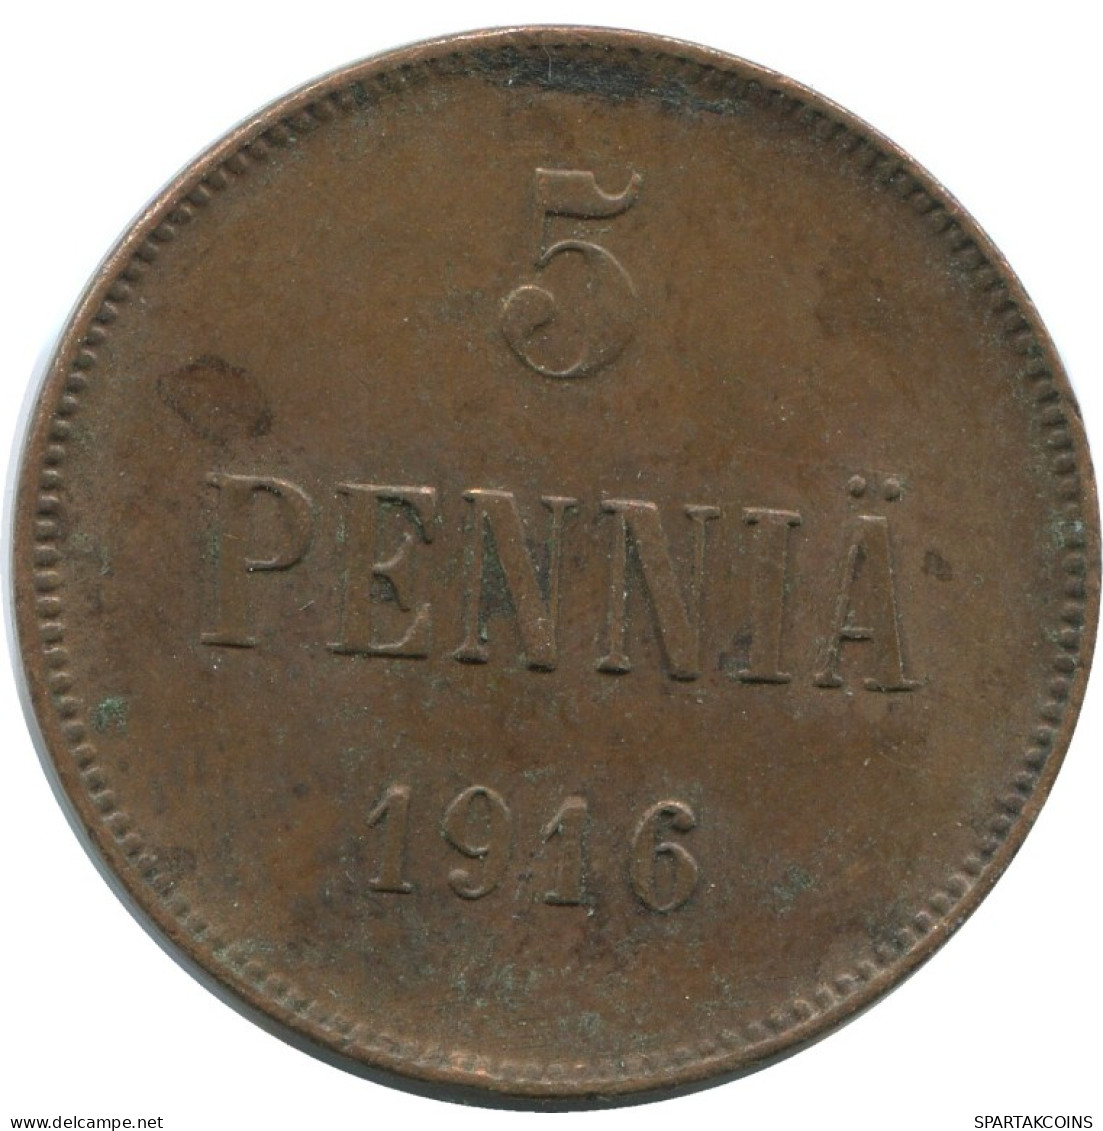 5 PENNIA 1916 FINLAND Coin RUSSIA EMPIRE #AB198.5.U.A - Finland